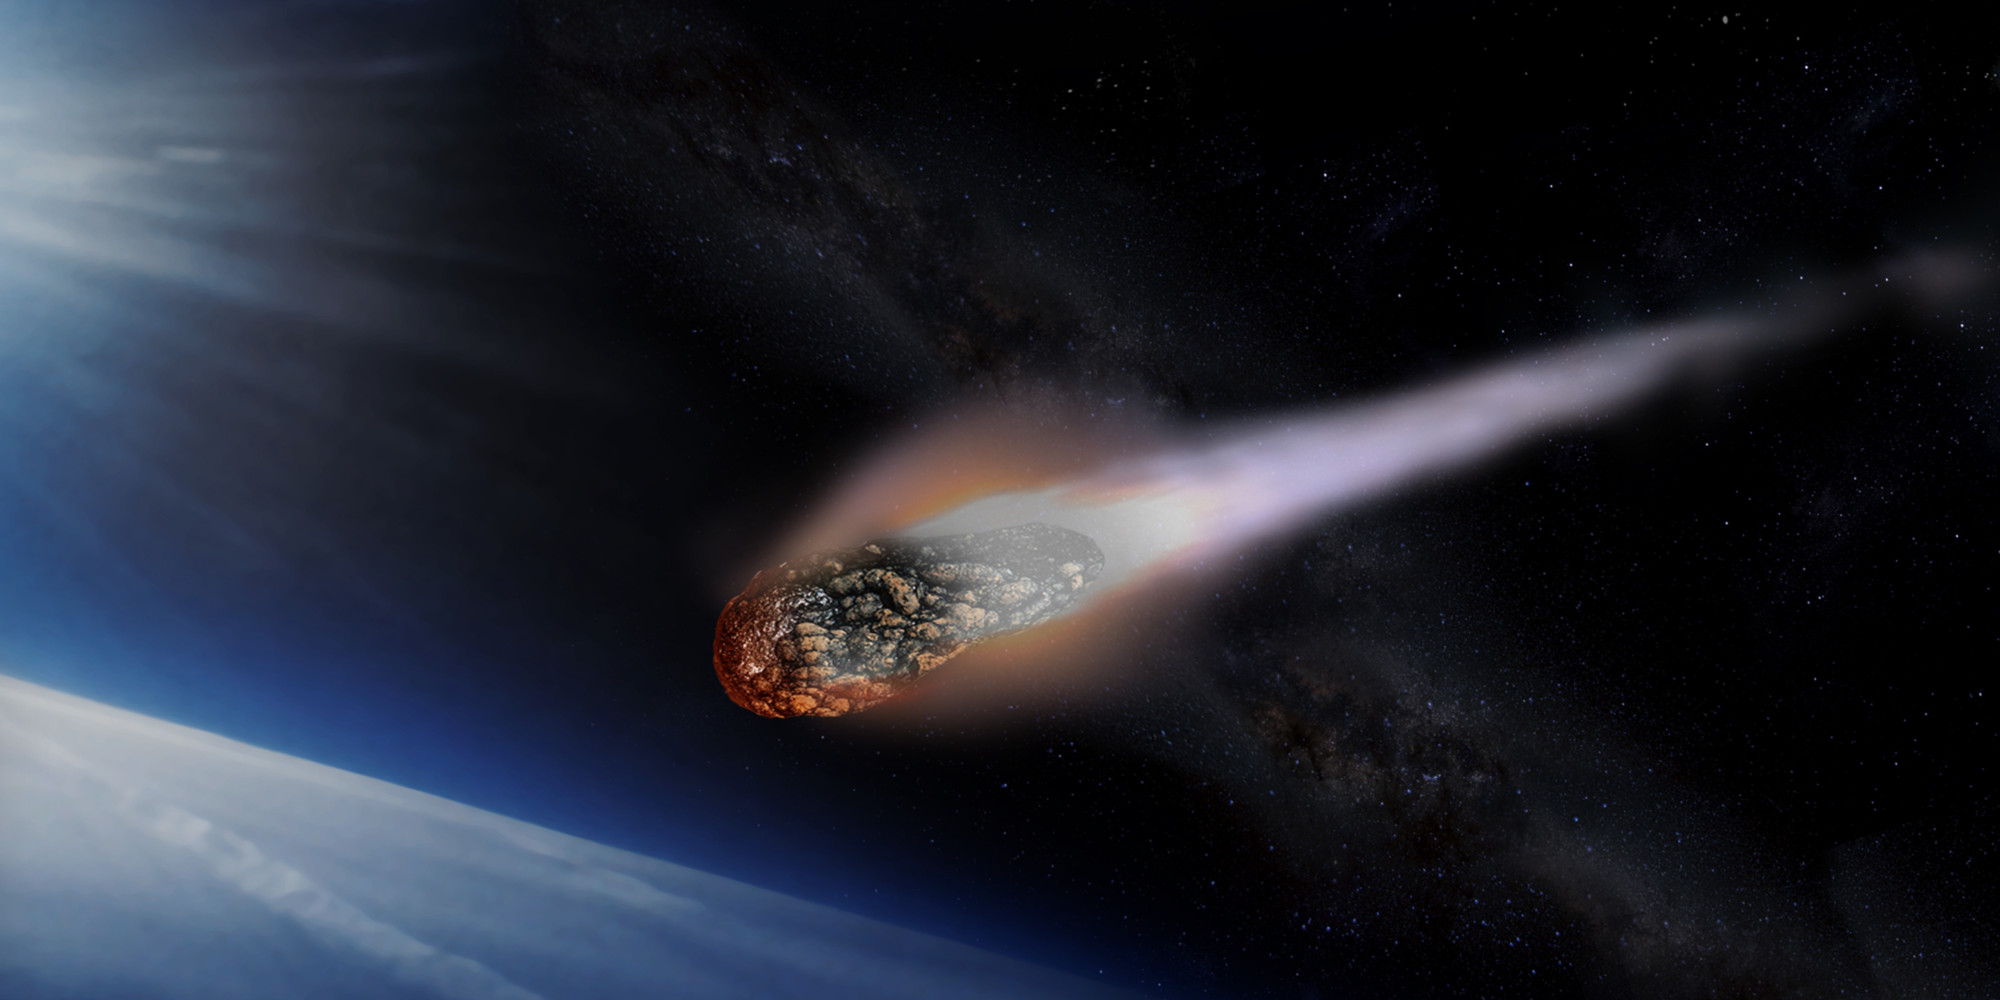 Національне космічне агентство США затвердило терміни місії до астероїда 16 Psyche, який містить корисних металів на $10 тис. квадрильйонів. 